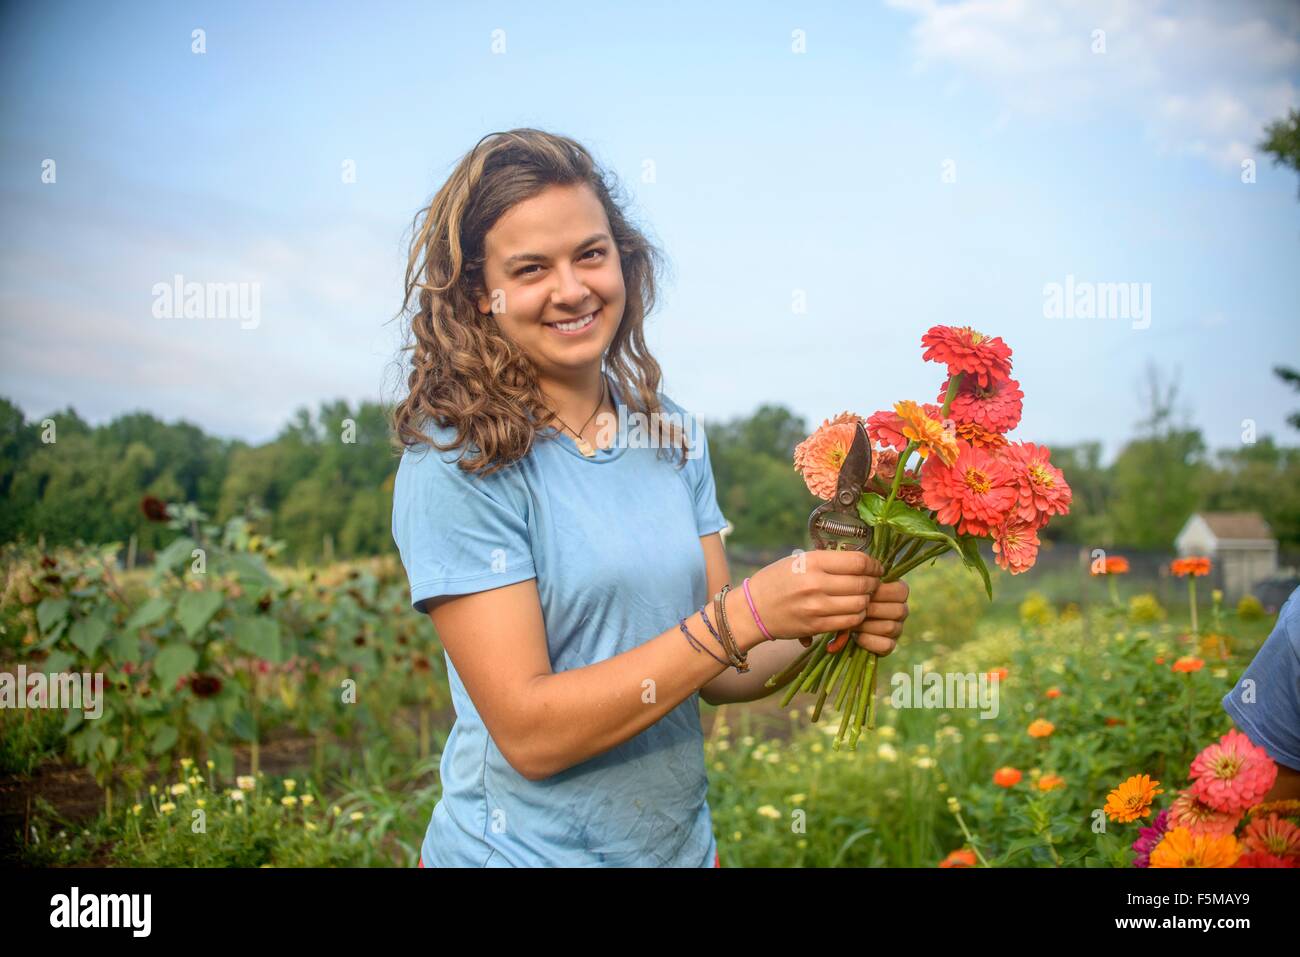 Ritratto di donna lavoratrice agricola tenendo un mazzo di fiori recisi freschi Foto Stock